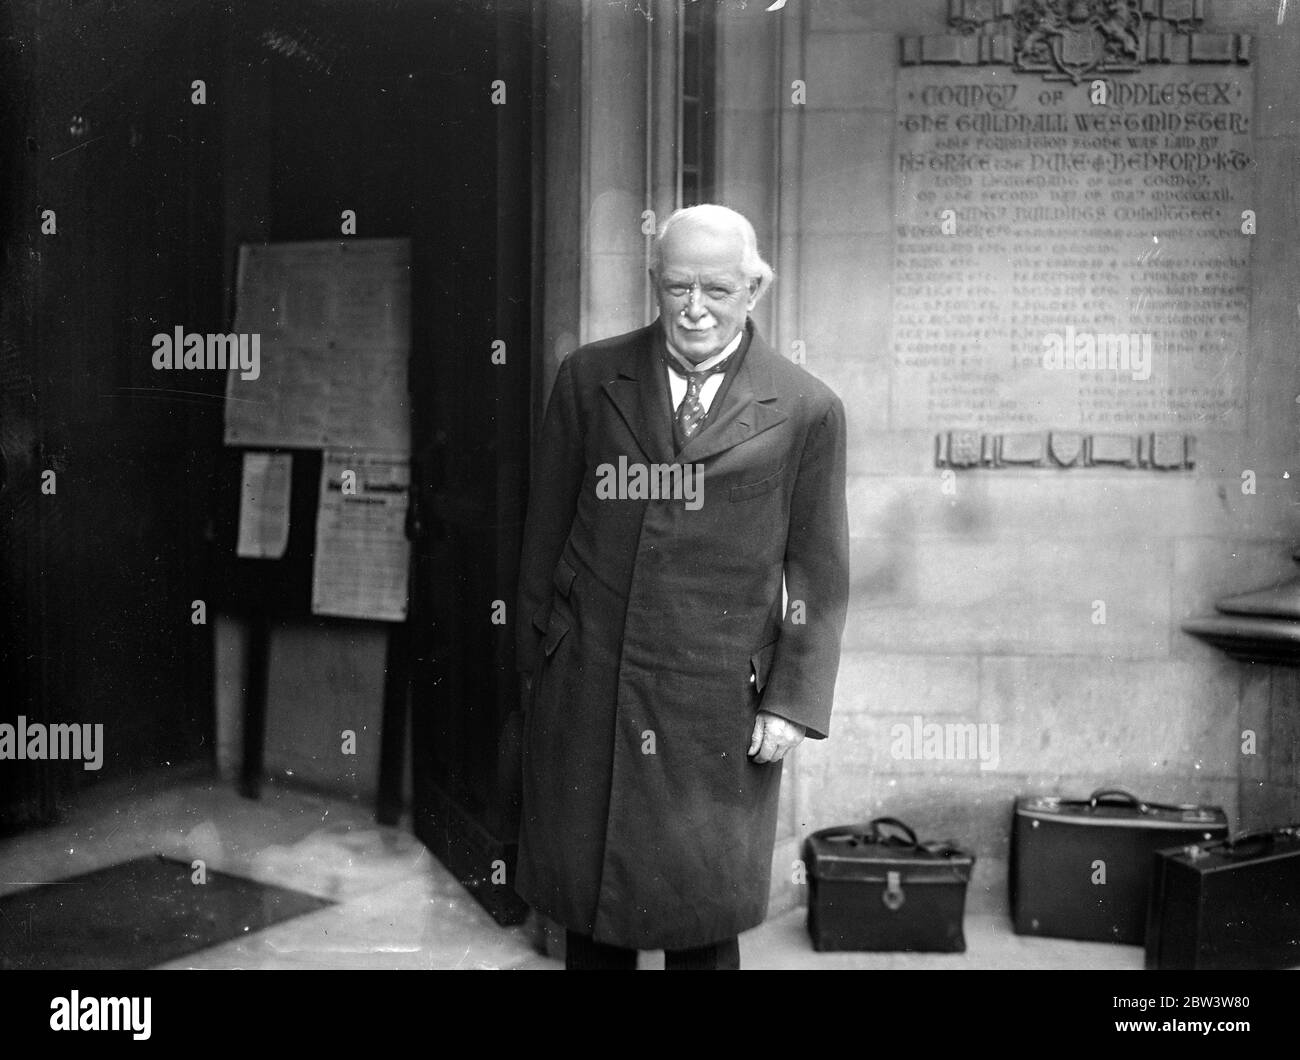 Herr Lloyd George gibt bei der "rüstungskommission" Beweise. Herr Lloyd George gab Beweise, als die Königliche Kommission für die private Herstellung des Waffenhandels ihre Sitzungen in der Middlesex Guildhall, Westminster, wiederaufgenommen hat. Foto zeigt, Herr Lloyd George Ankunft in der Middlesex Guildhall Westminster. Mai 1936 Stockfoto